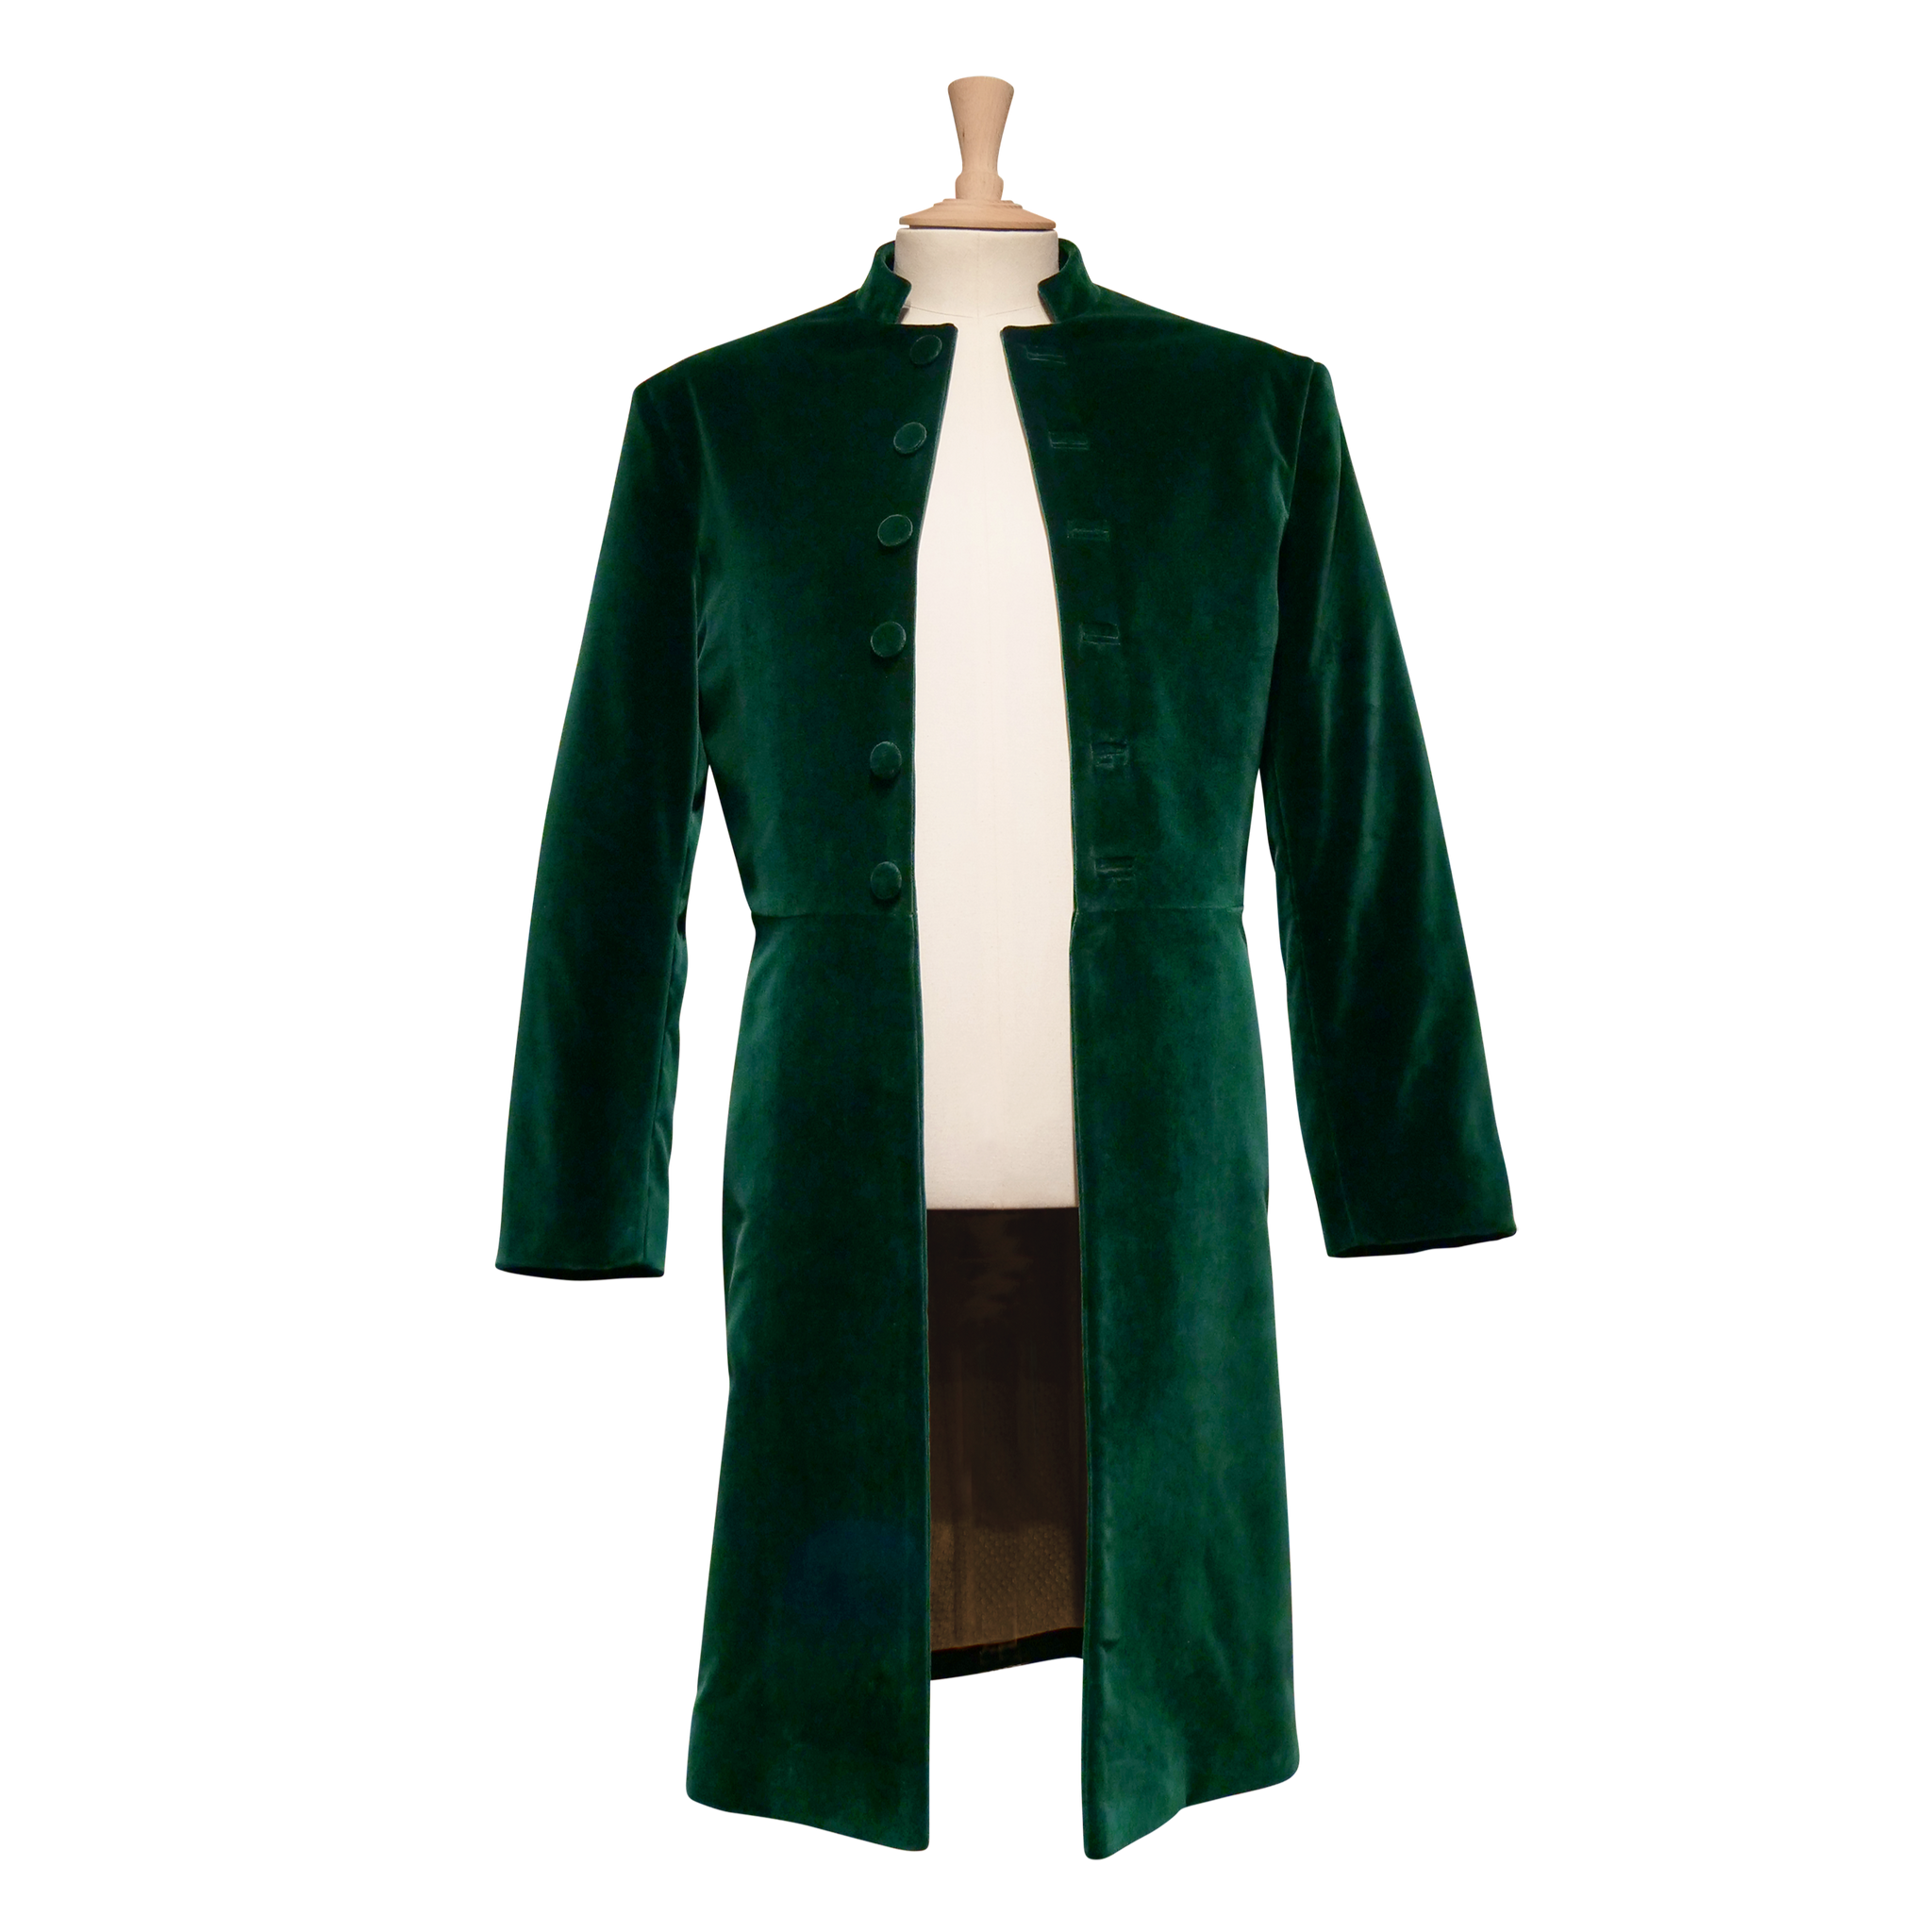 Men's Green Velvet Frock Coat Sample (size large)